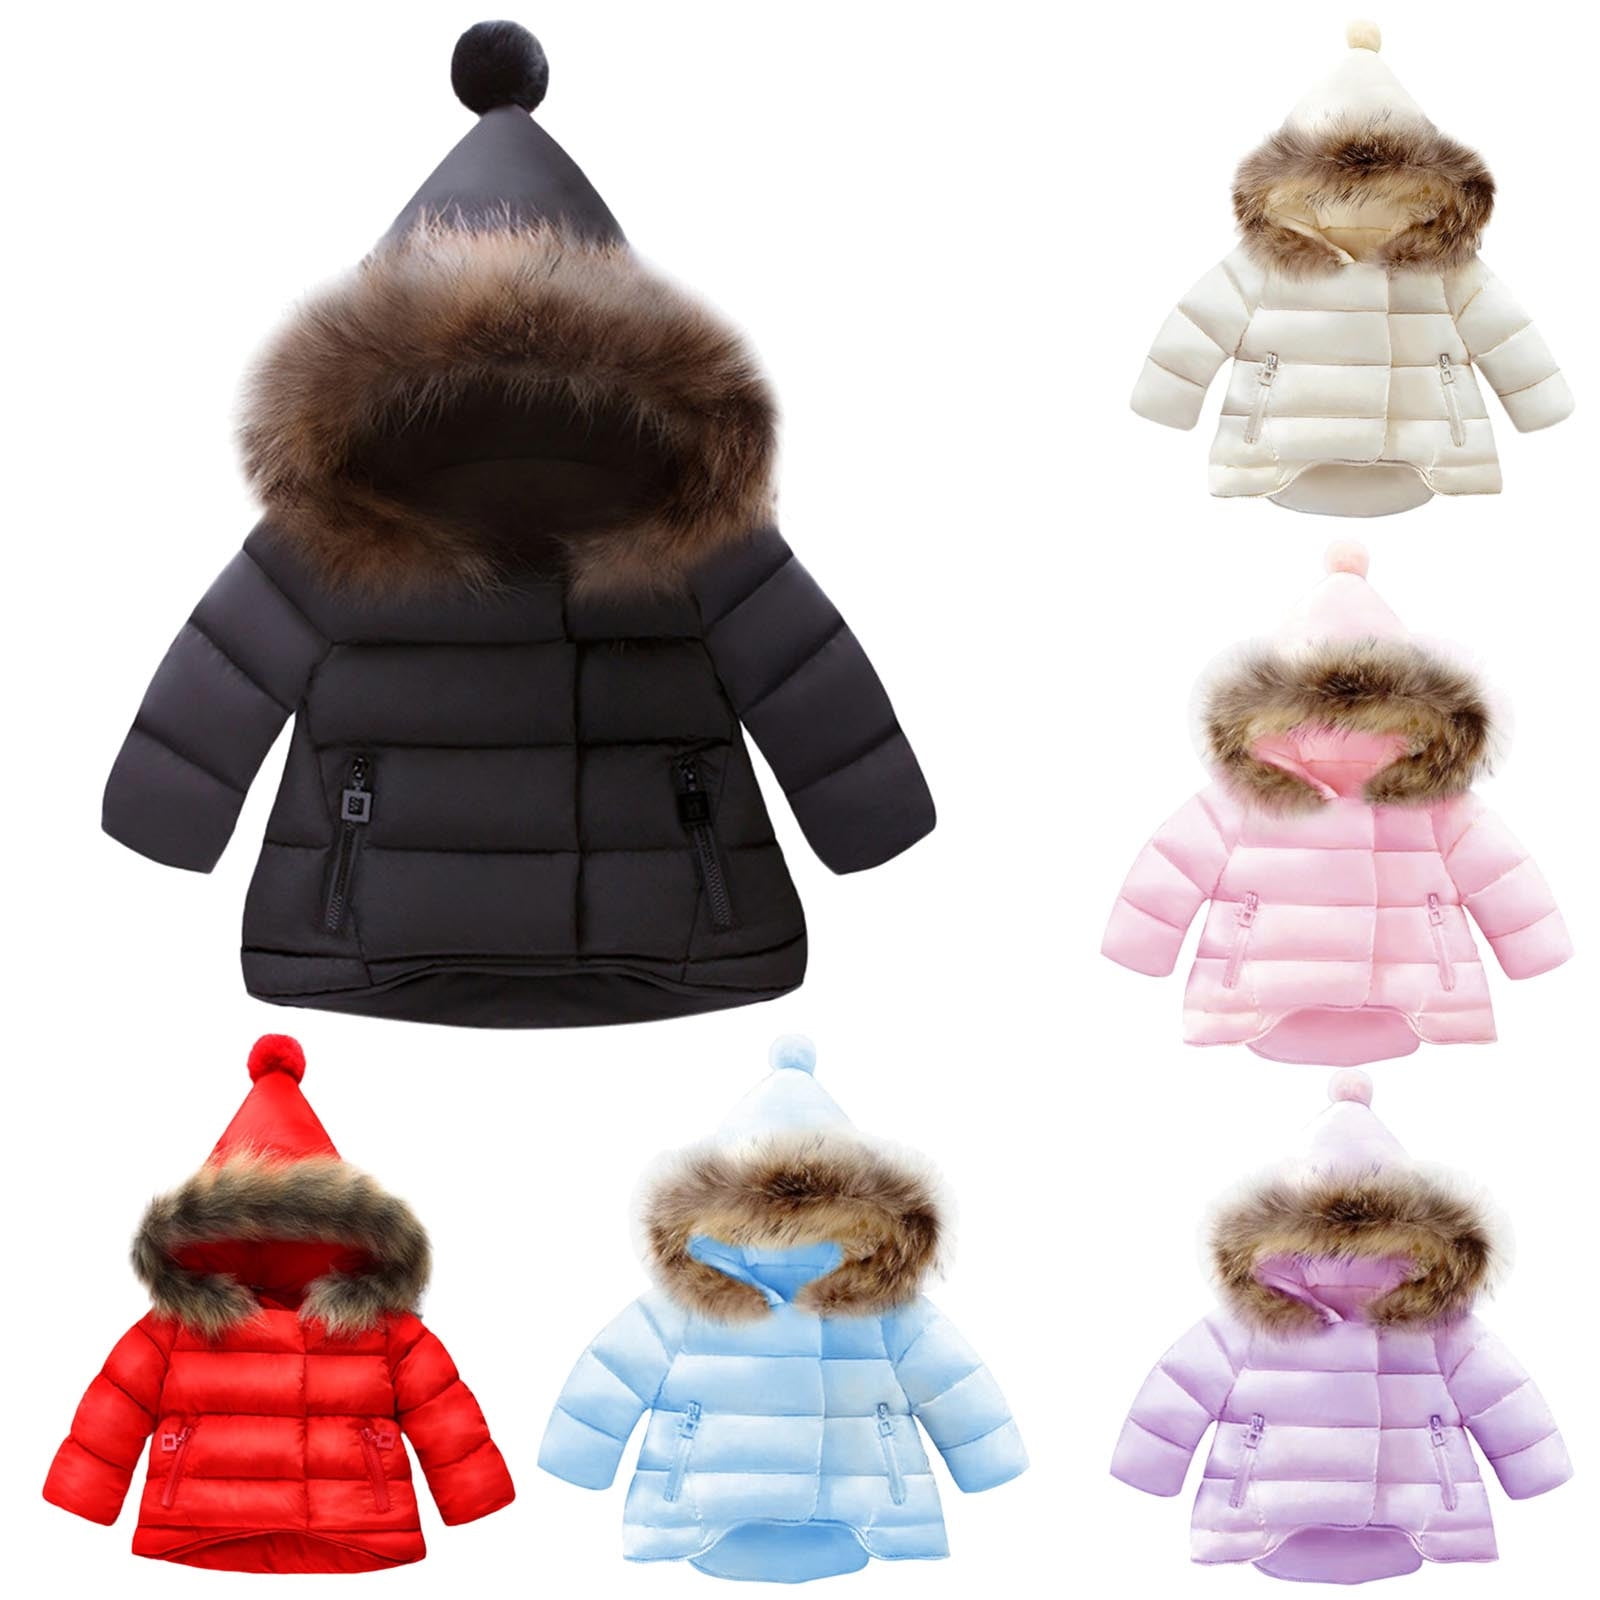 Baby girls pink SNOWSUIT 0-3 months 2 zips warm hooded winter coat double zip 